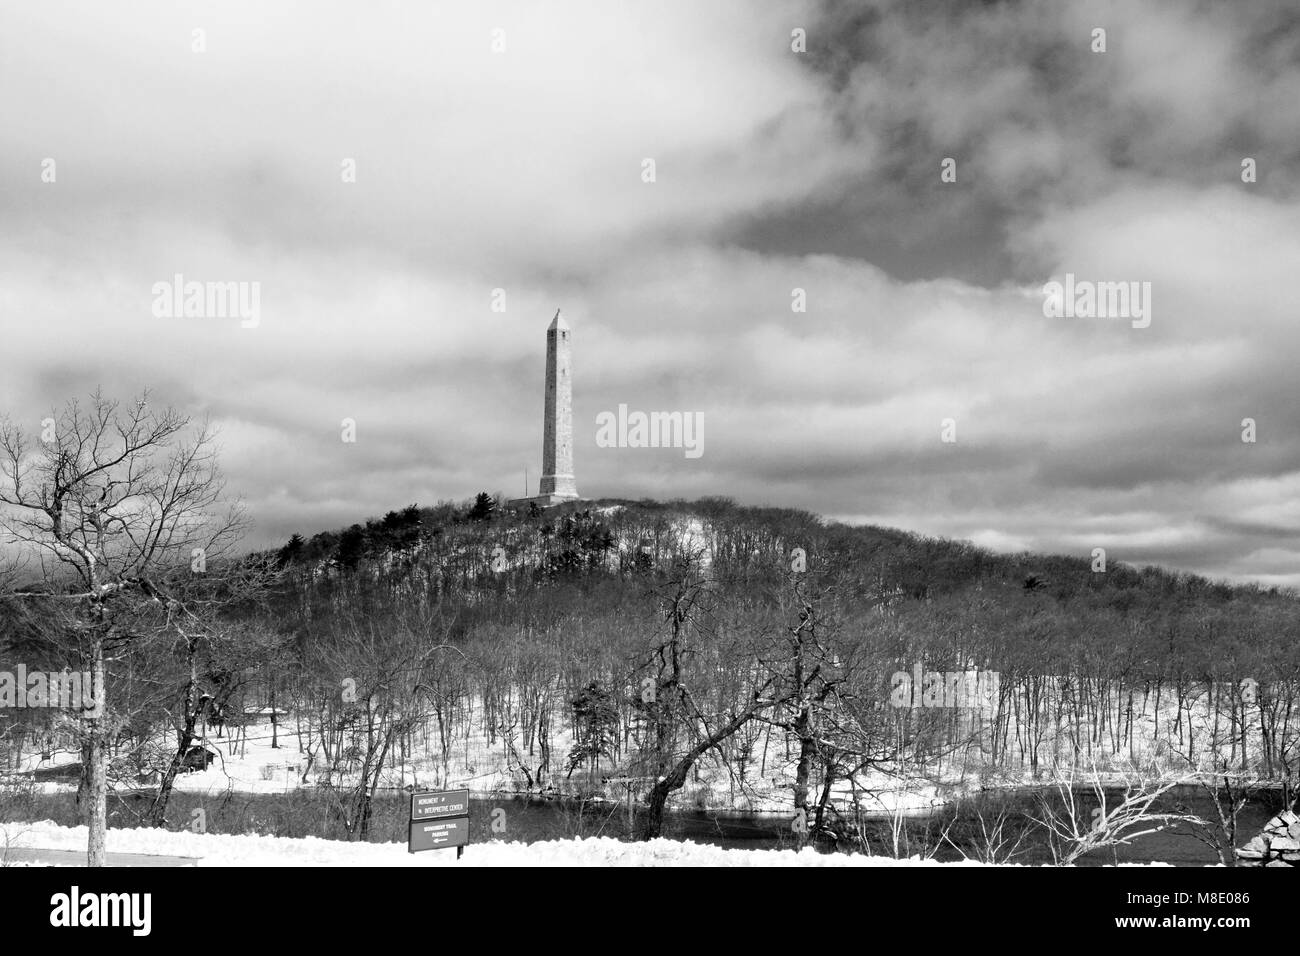 High Point Denkmal, Montague, New-Jersey kennzeichnet die höchste Erhebung in New Jersey auf 1.803 Fuß über dem Meeresspiegel. Stockfoto